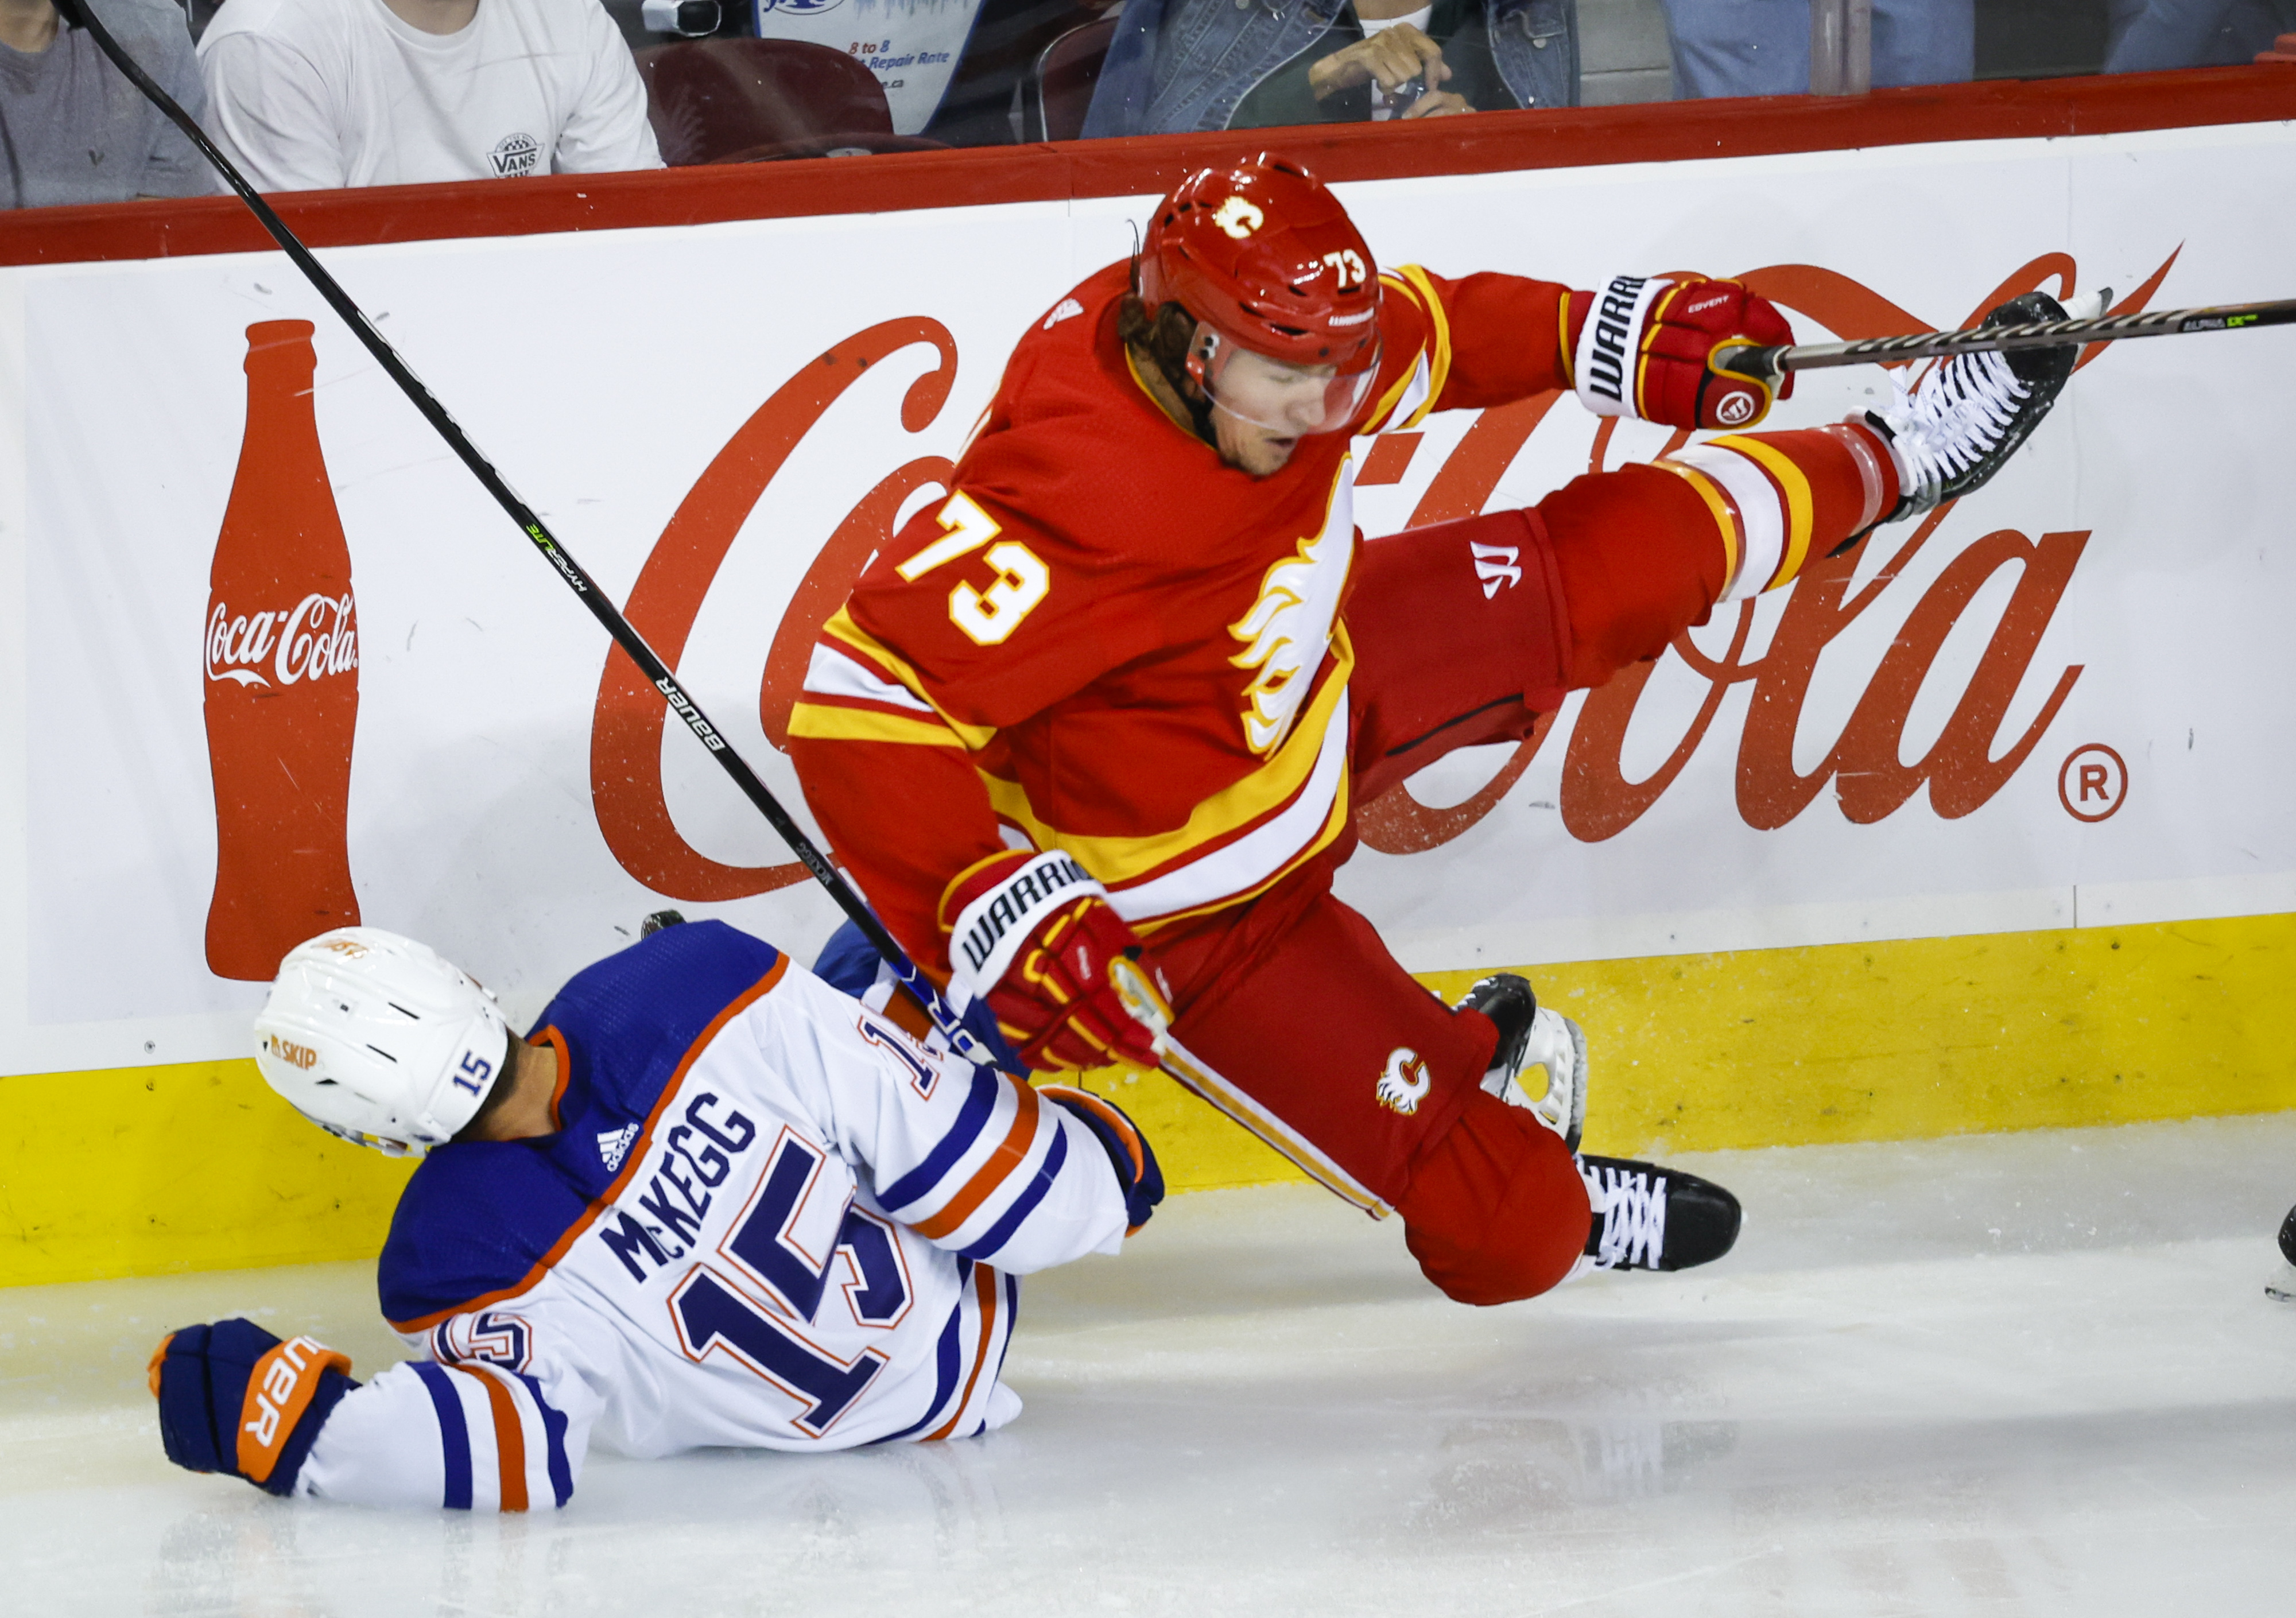 Edmonton Oilers blanked 4-0 by Calgary Flames in pre-season game Globalnews.ca